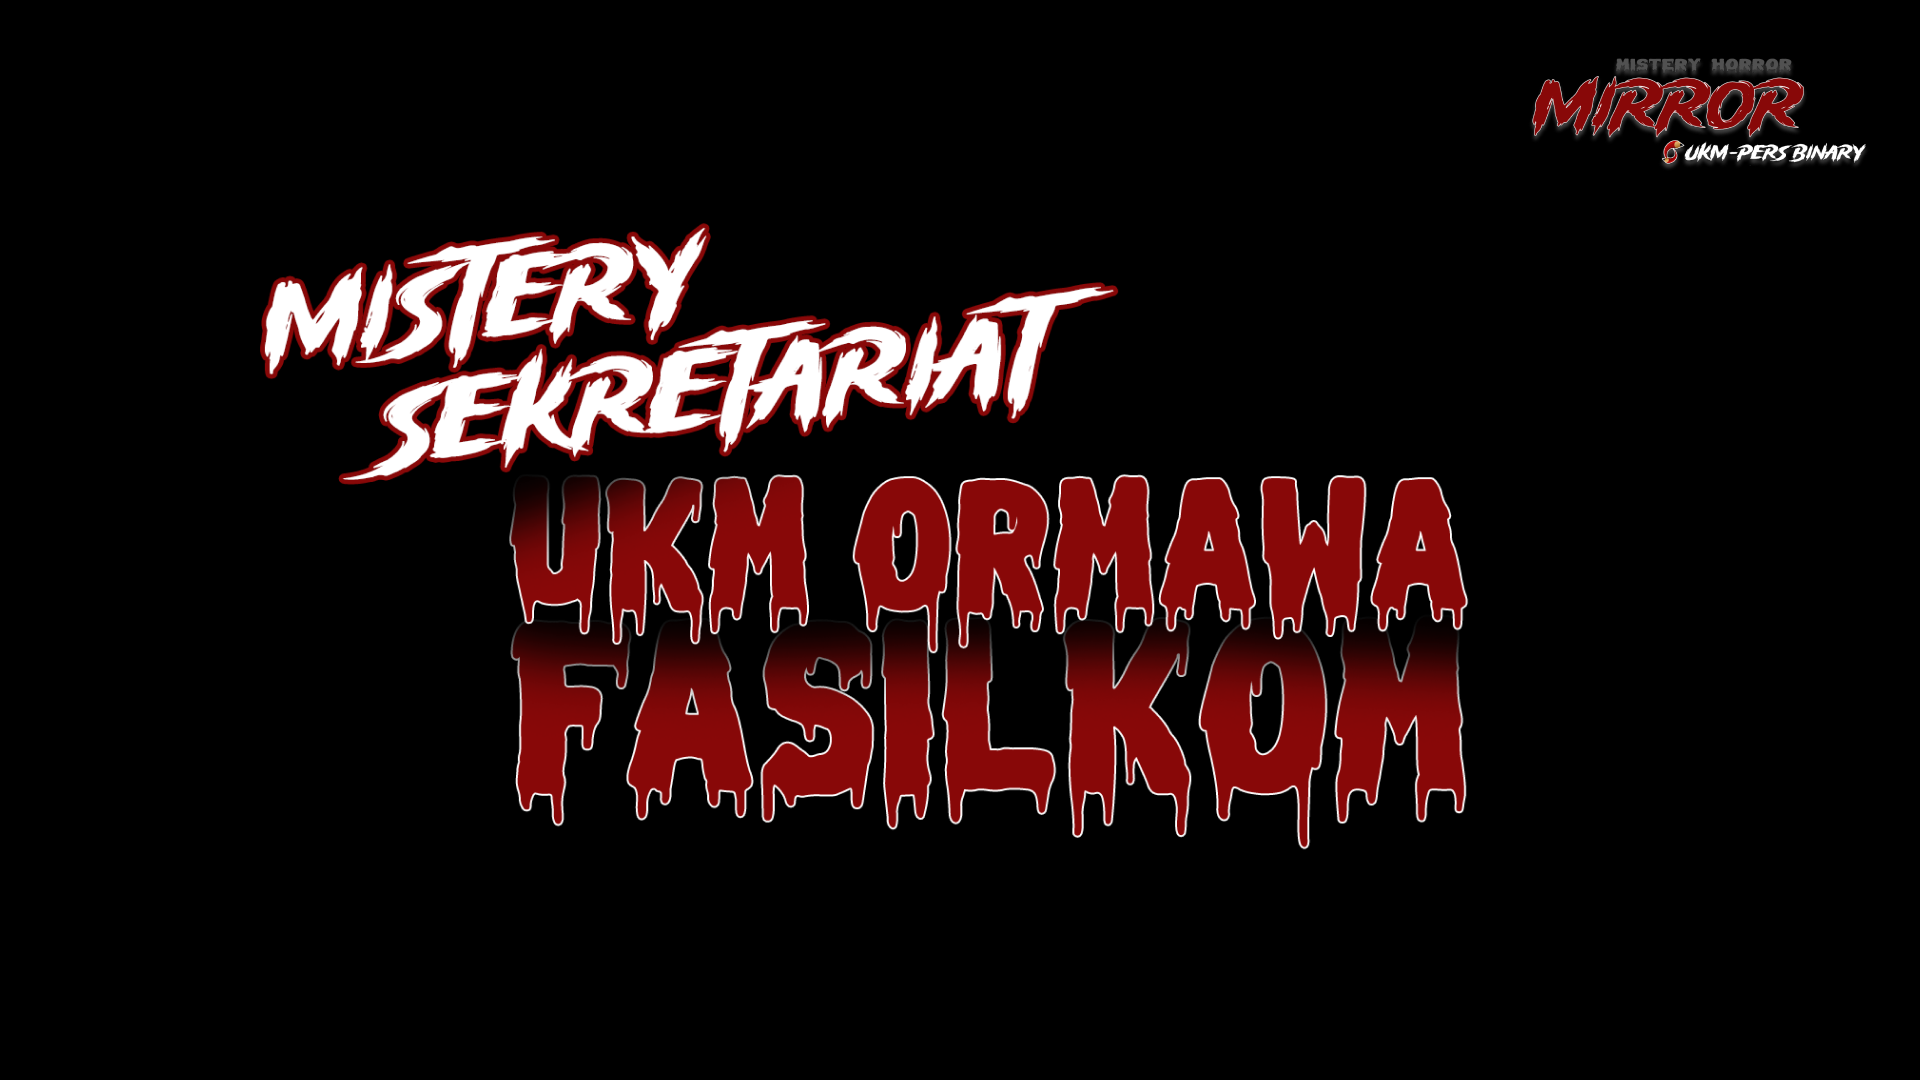 MIRROR EPS.01 – MISTERY SEKRETARIAT UKM ORMAWA FASILKOM!!!